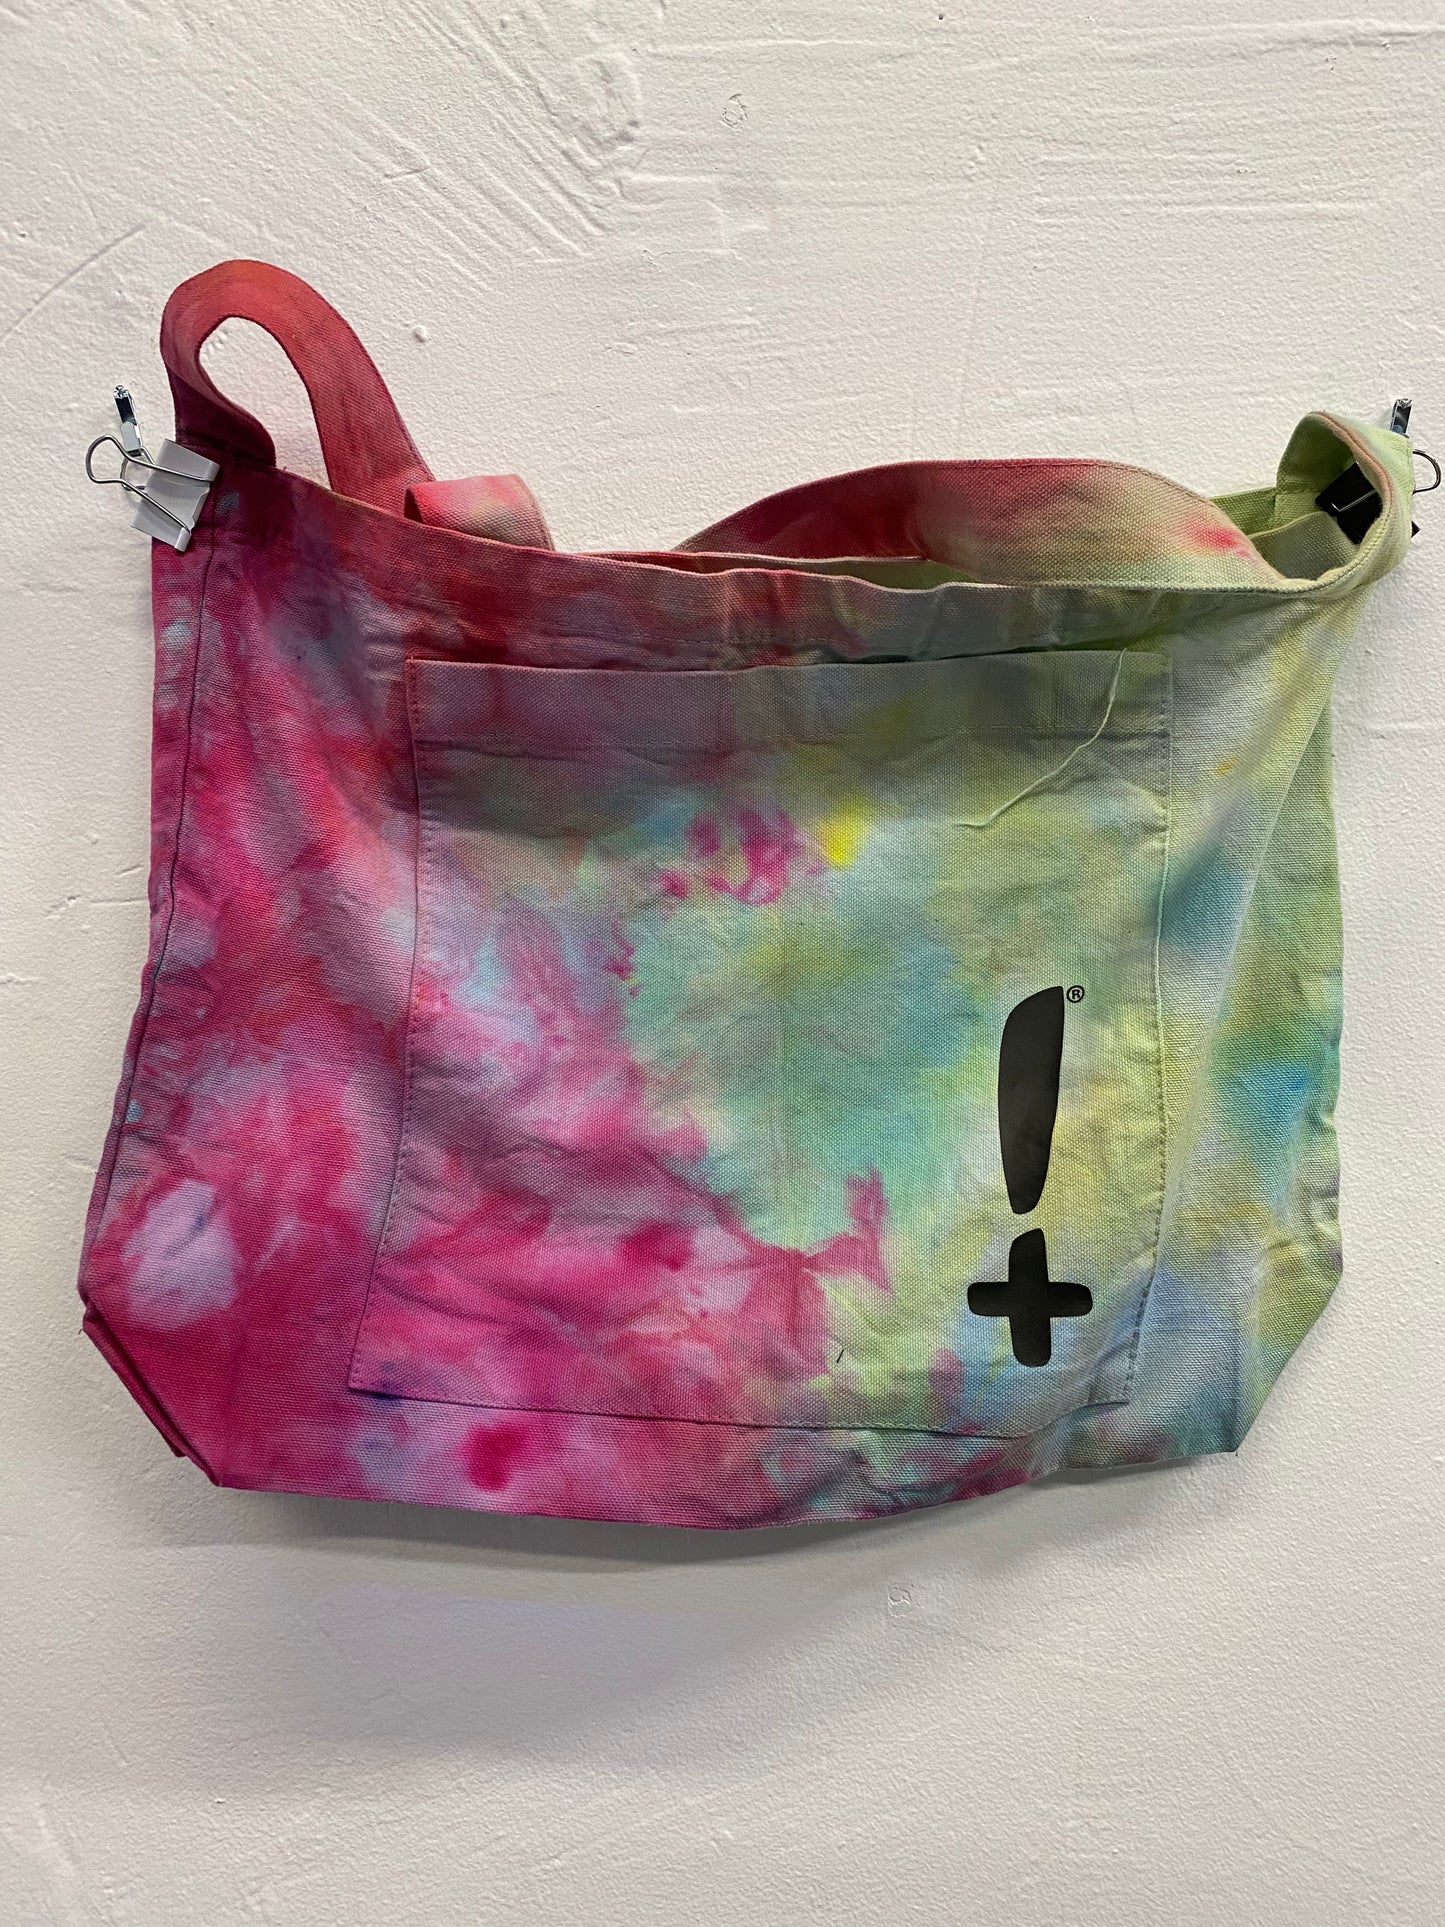 Hecka Positive Tie Dye Tote Bag - Large